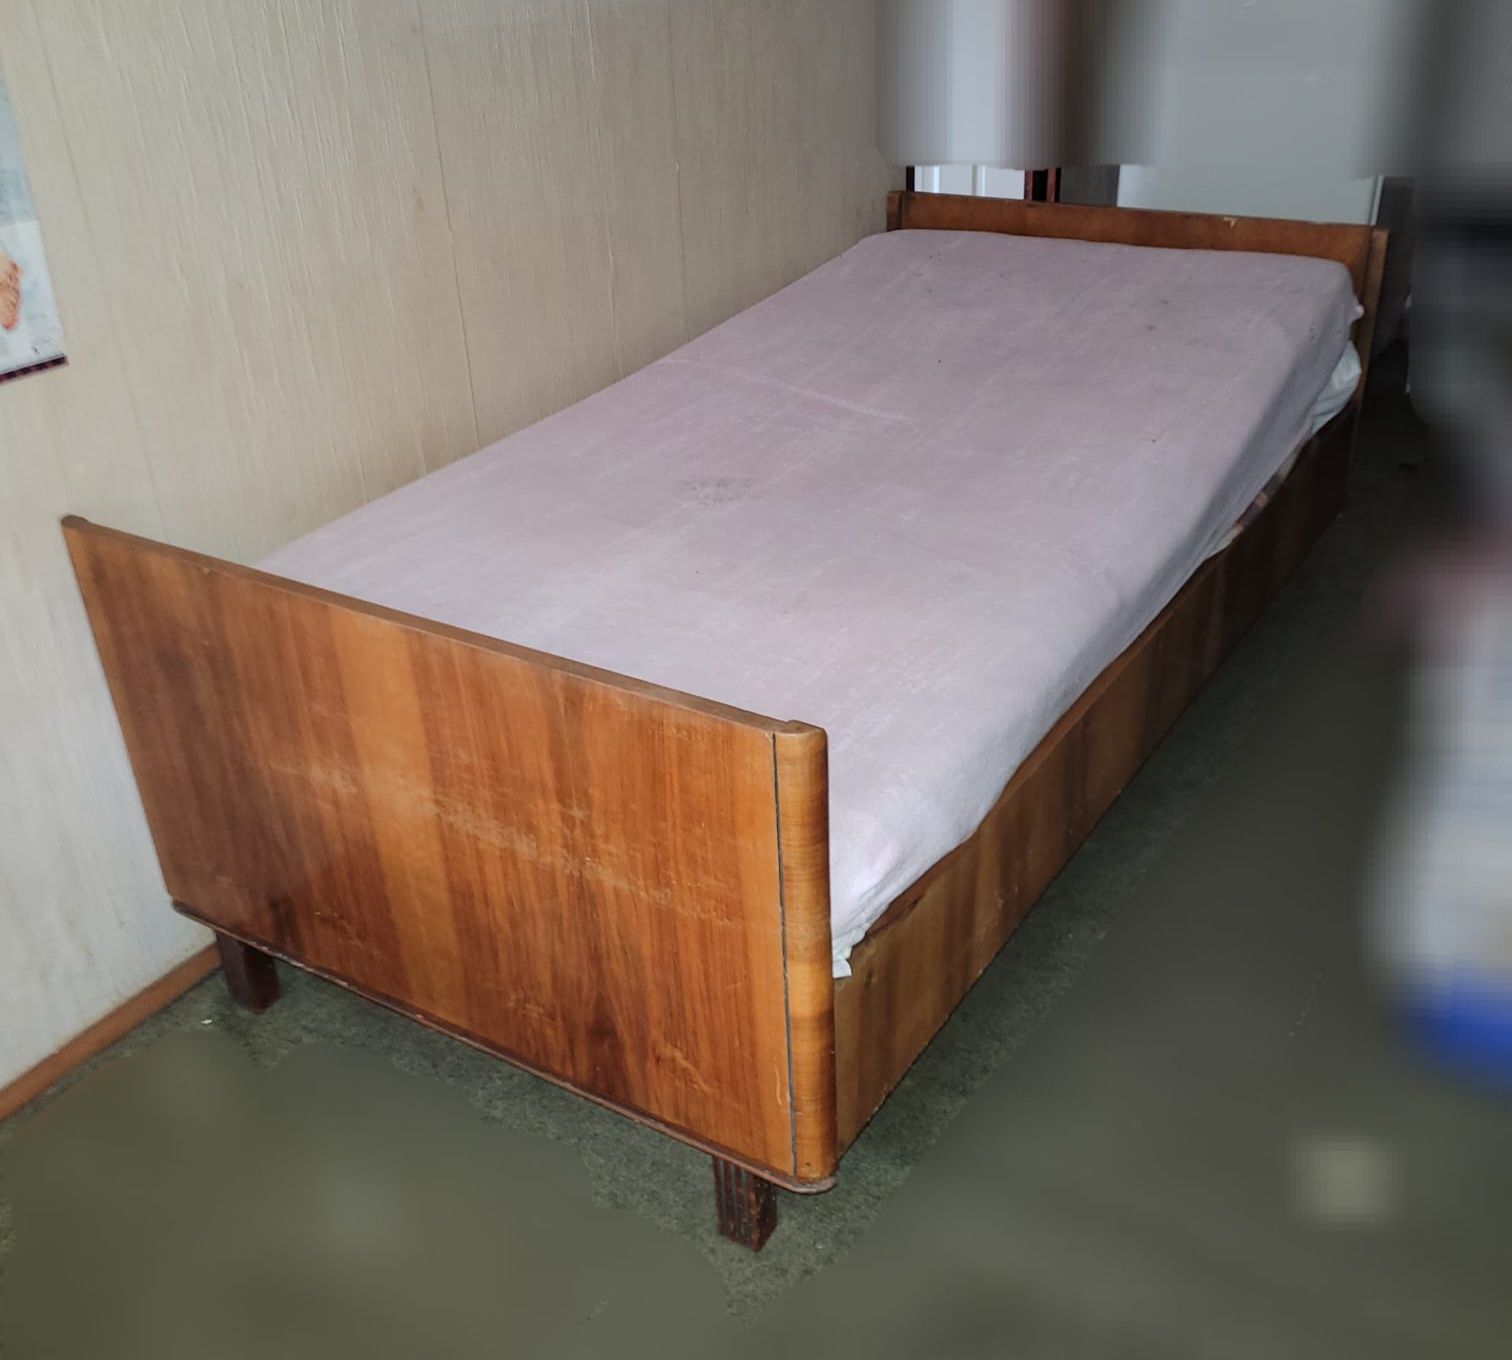 Łóżko z lat 60tych